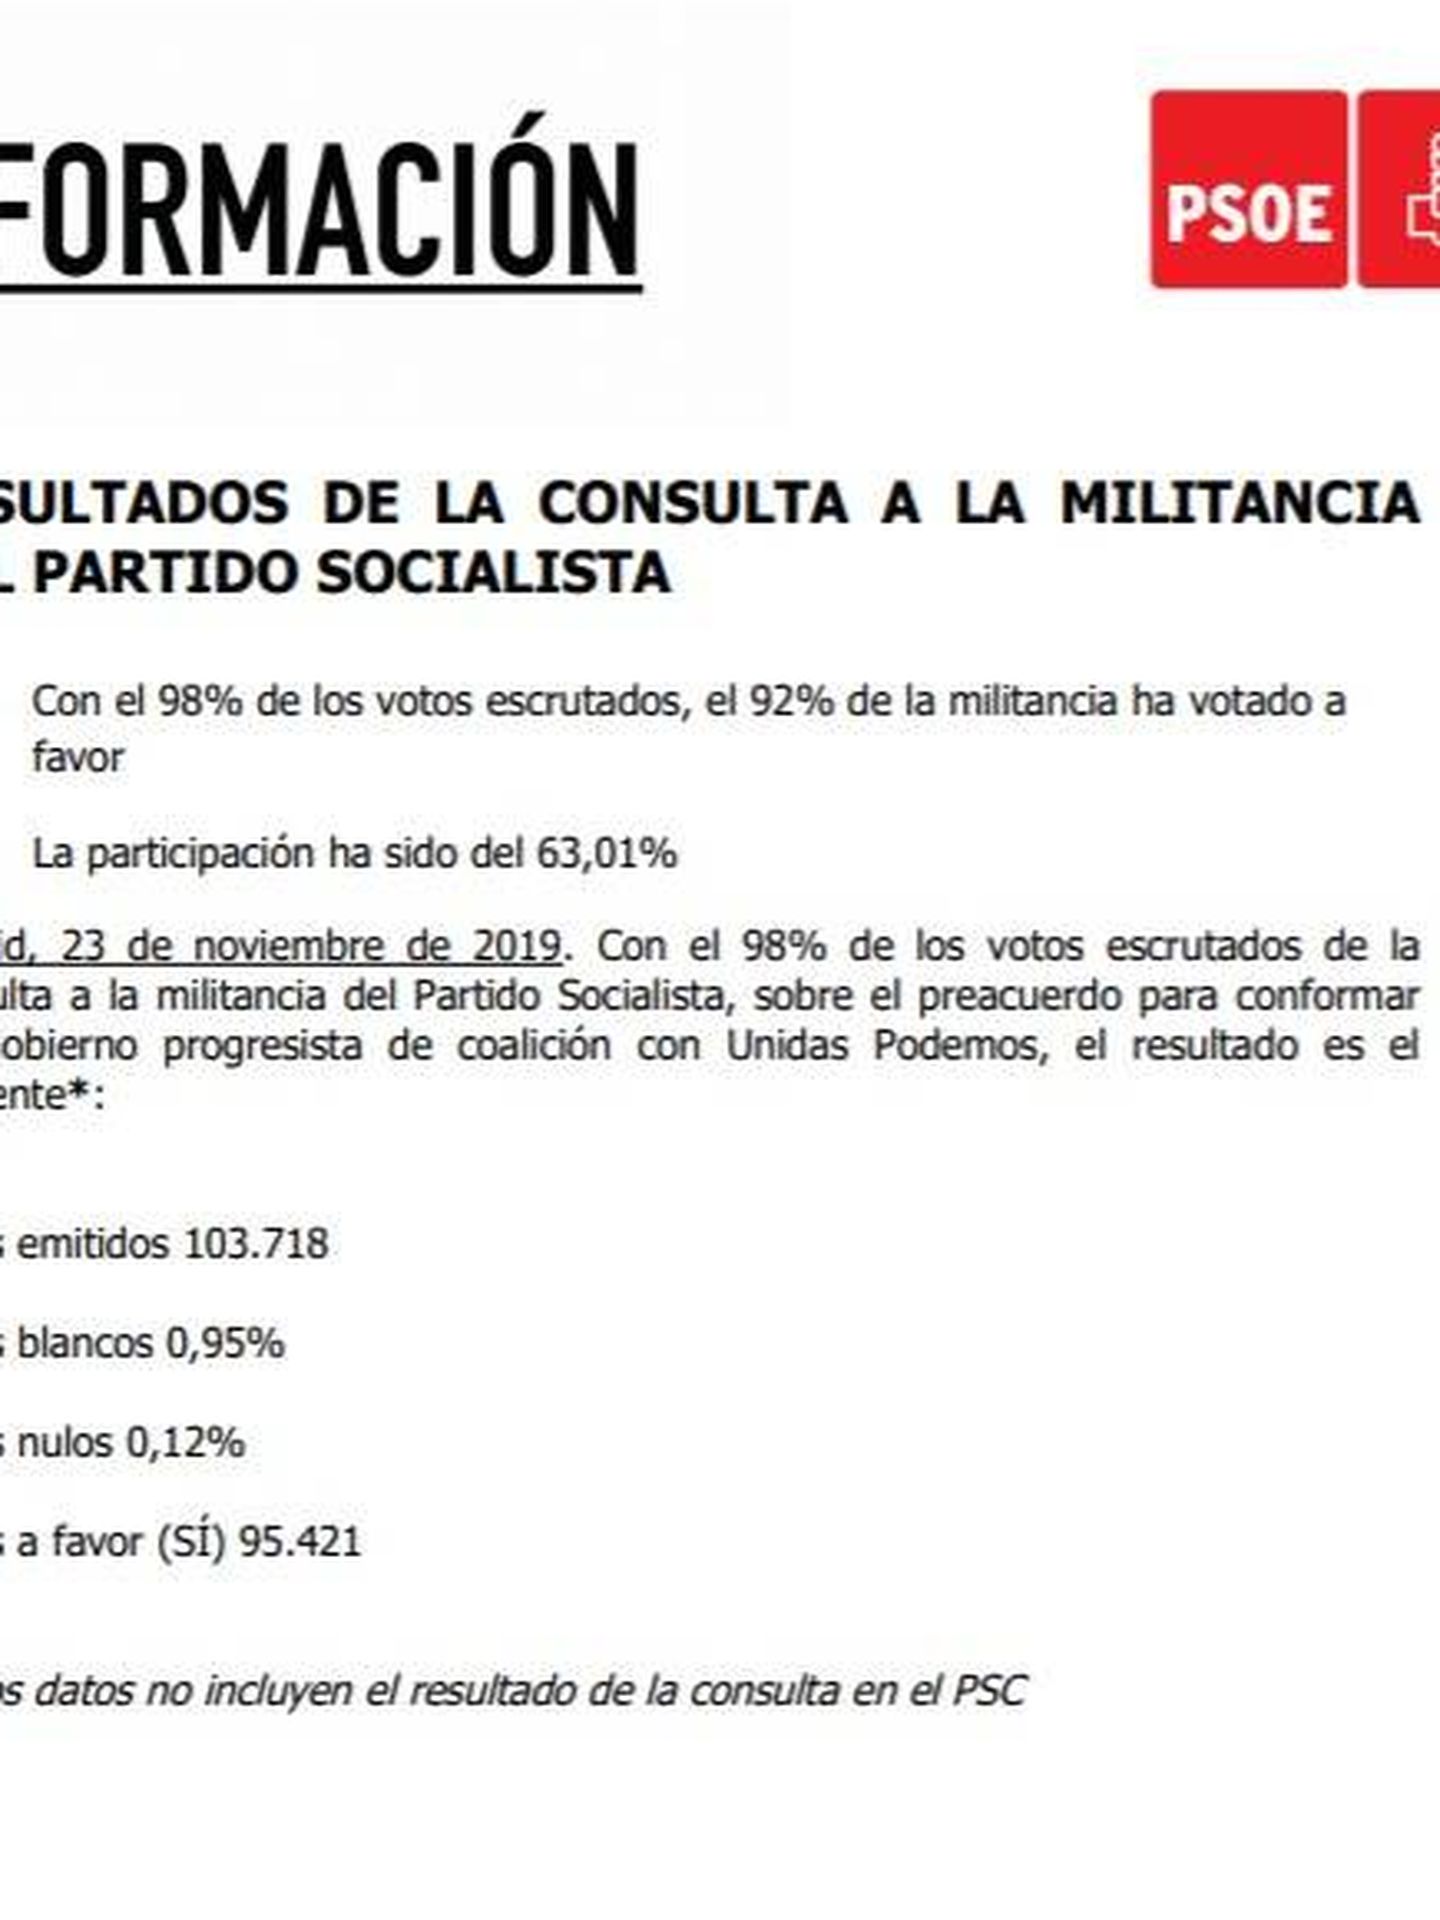 Consulte aquí en PDF los resultados provisionales de la consulta a la militancia del PSOE sobre el preacuerdo con Unidas Podemos.